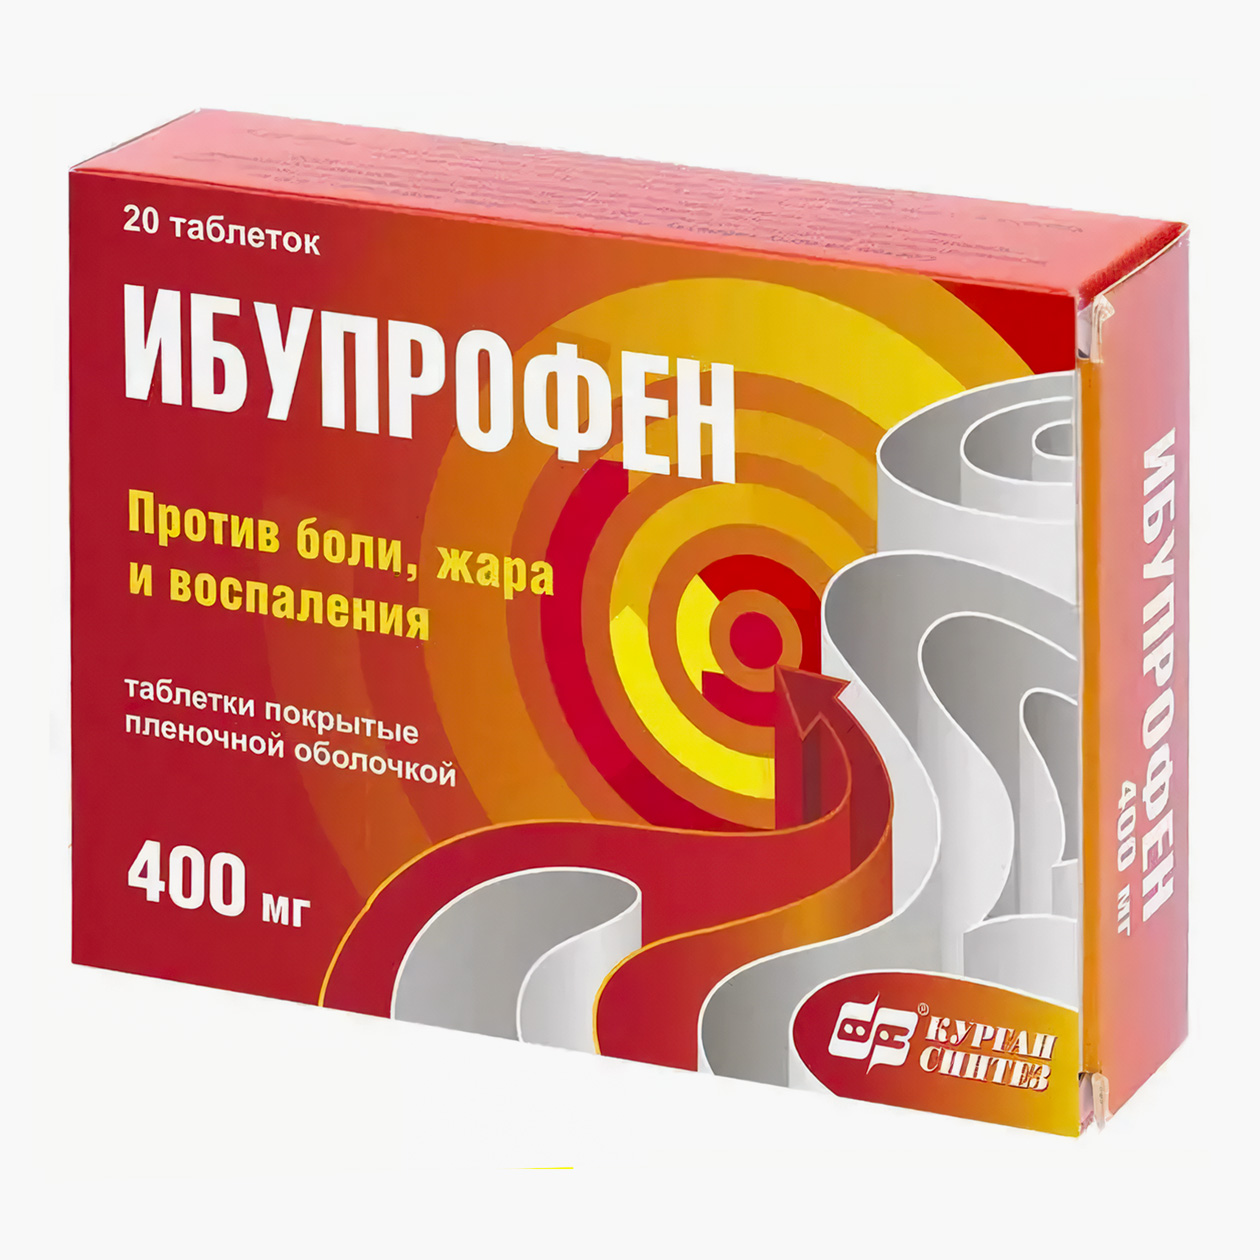 Цена за 20 таблеток 400 мг ибупрофена начинается от 51 ₽, цена за 20 таблеток 200 мг — от 17 ₽